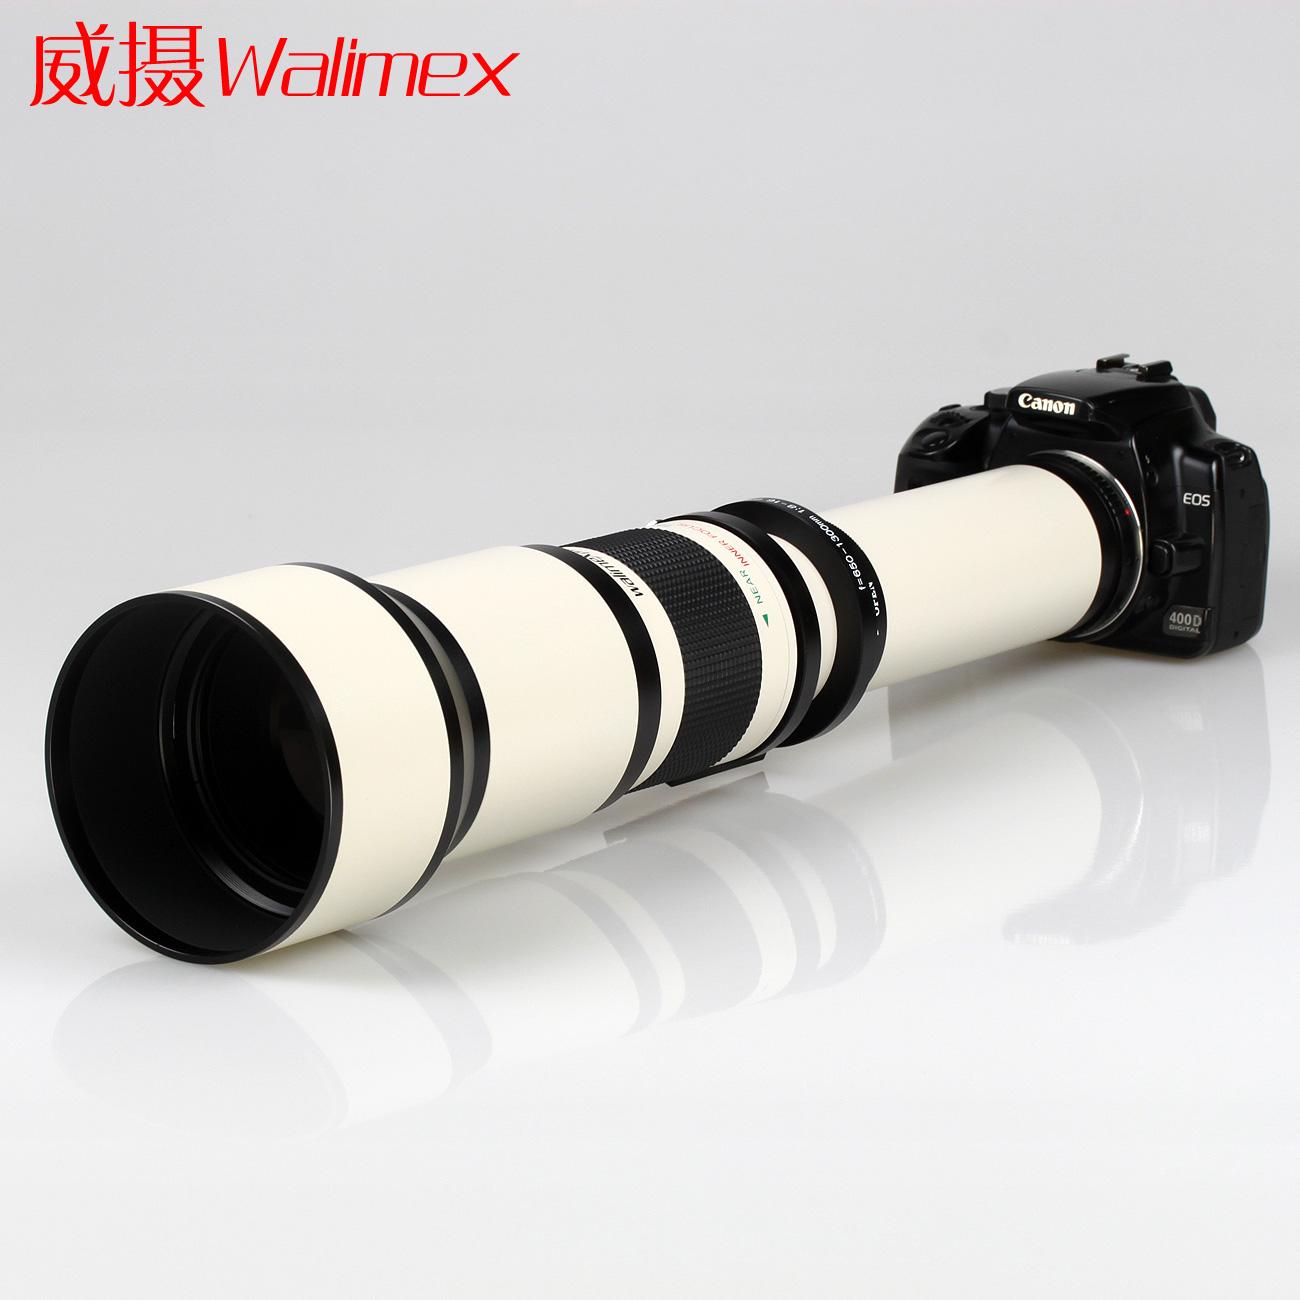 Walimex/威摄650-1300毫米长焦镜头/远摄变焦/单反镜头送UV